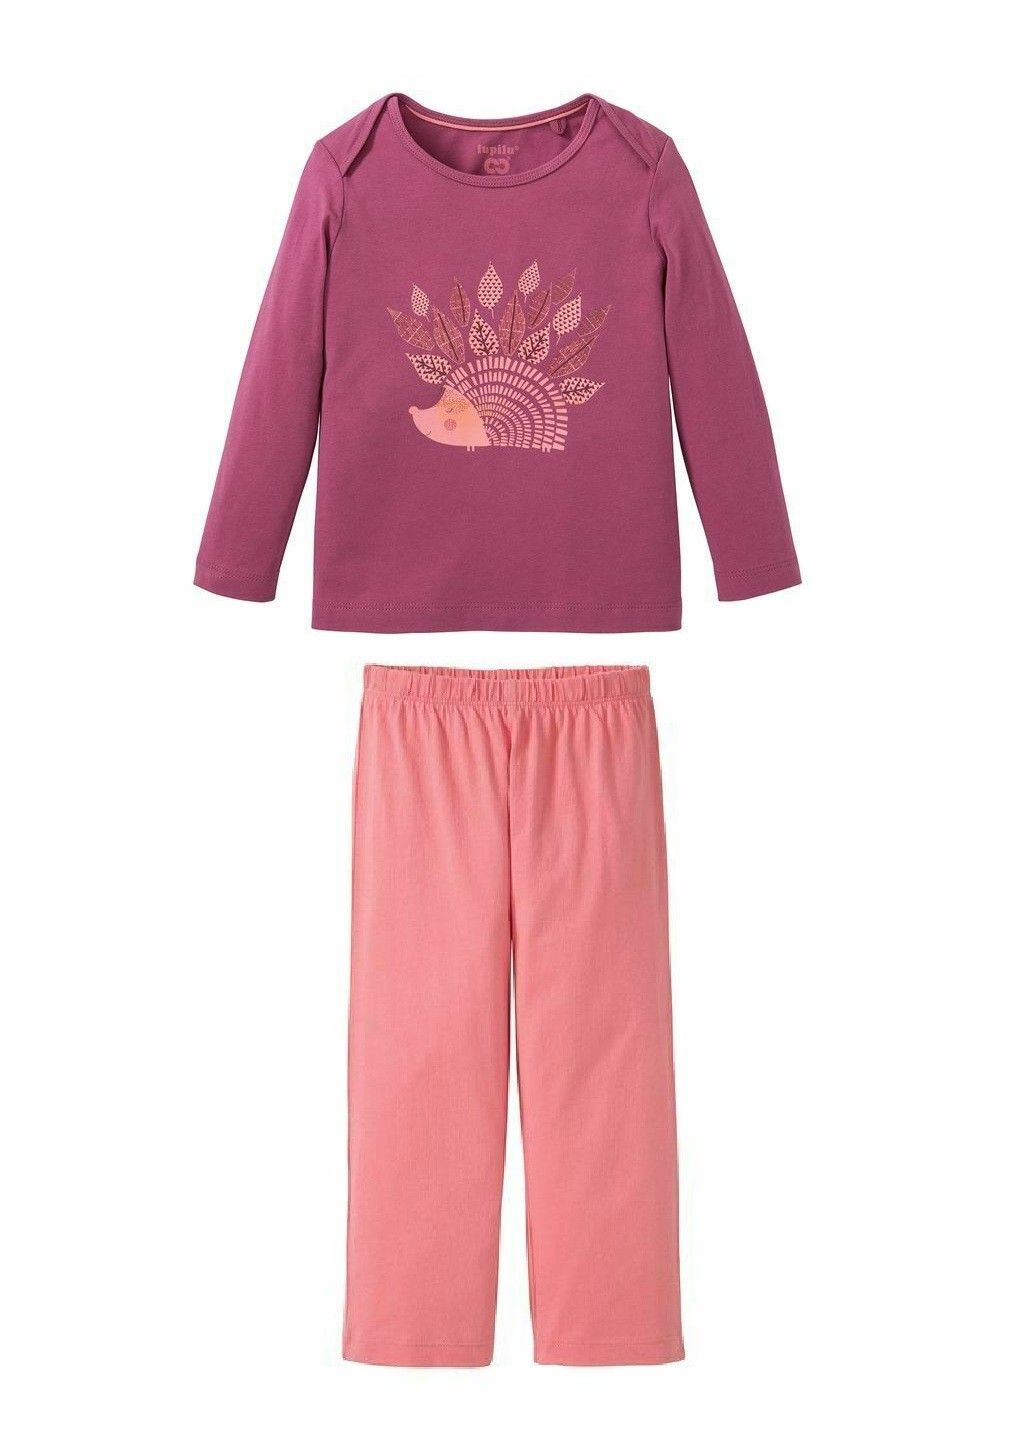 Розовая всесезон пижама для девочки лонгслив + брюки Lupilu